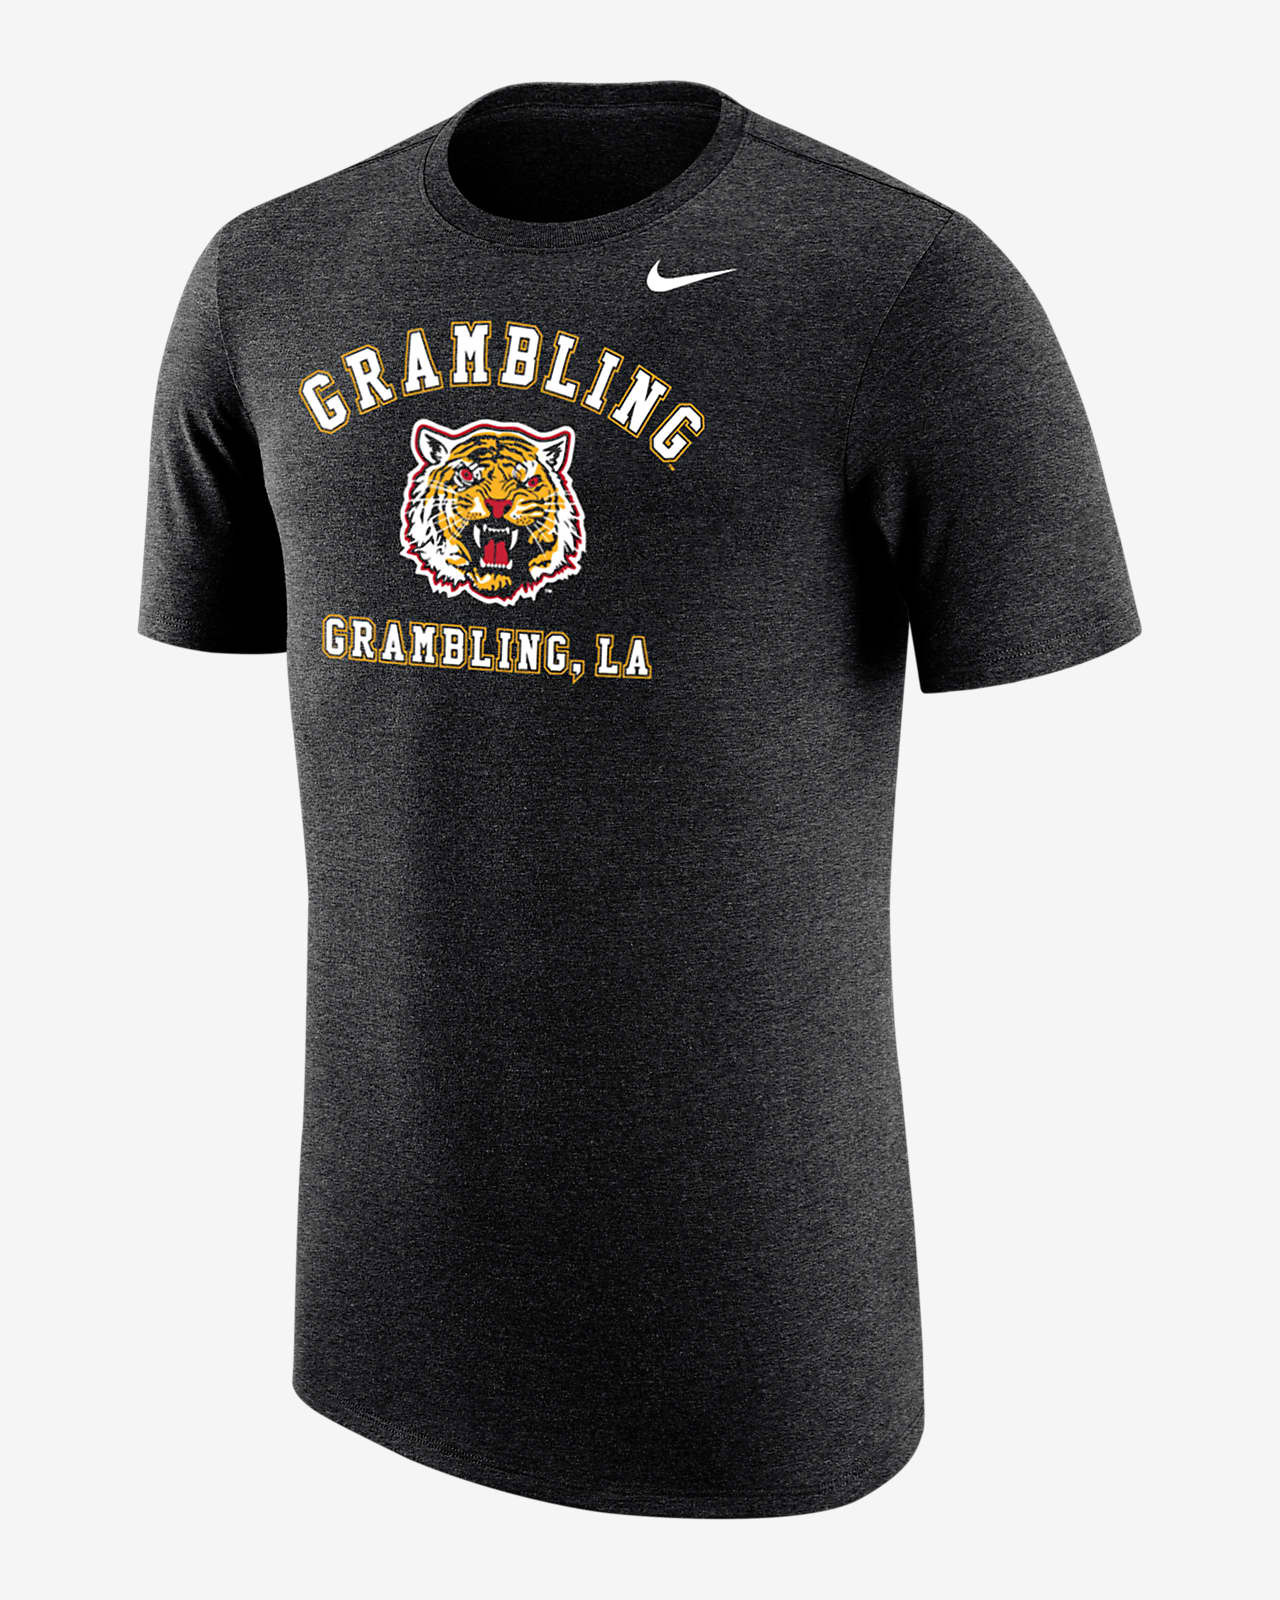 Grambling State Men's Nike College T-Shirt